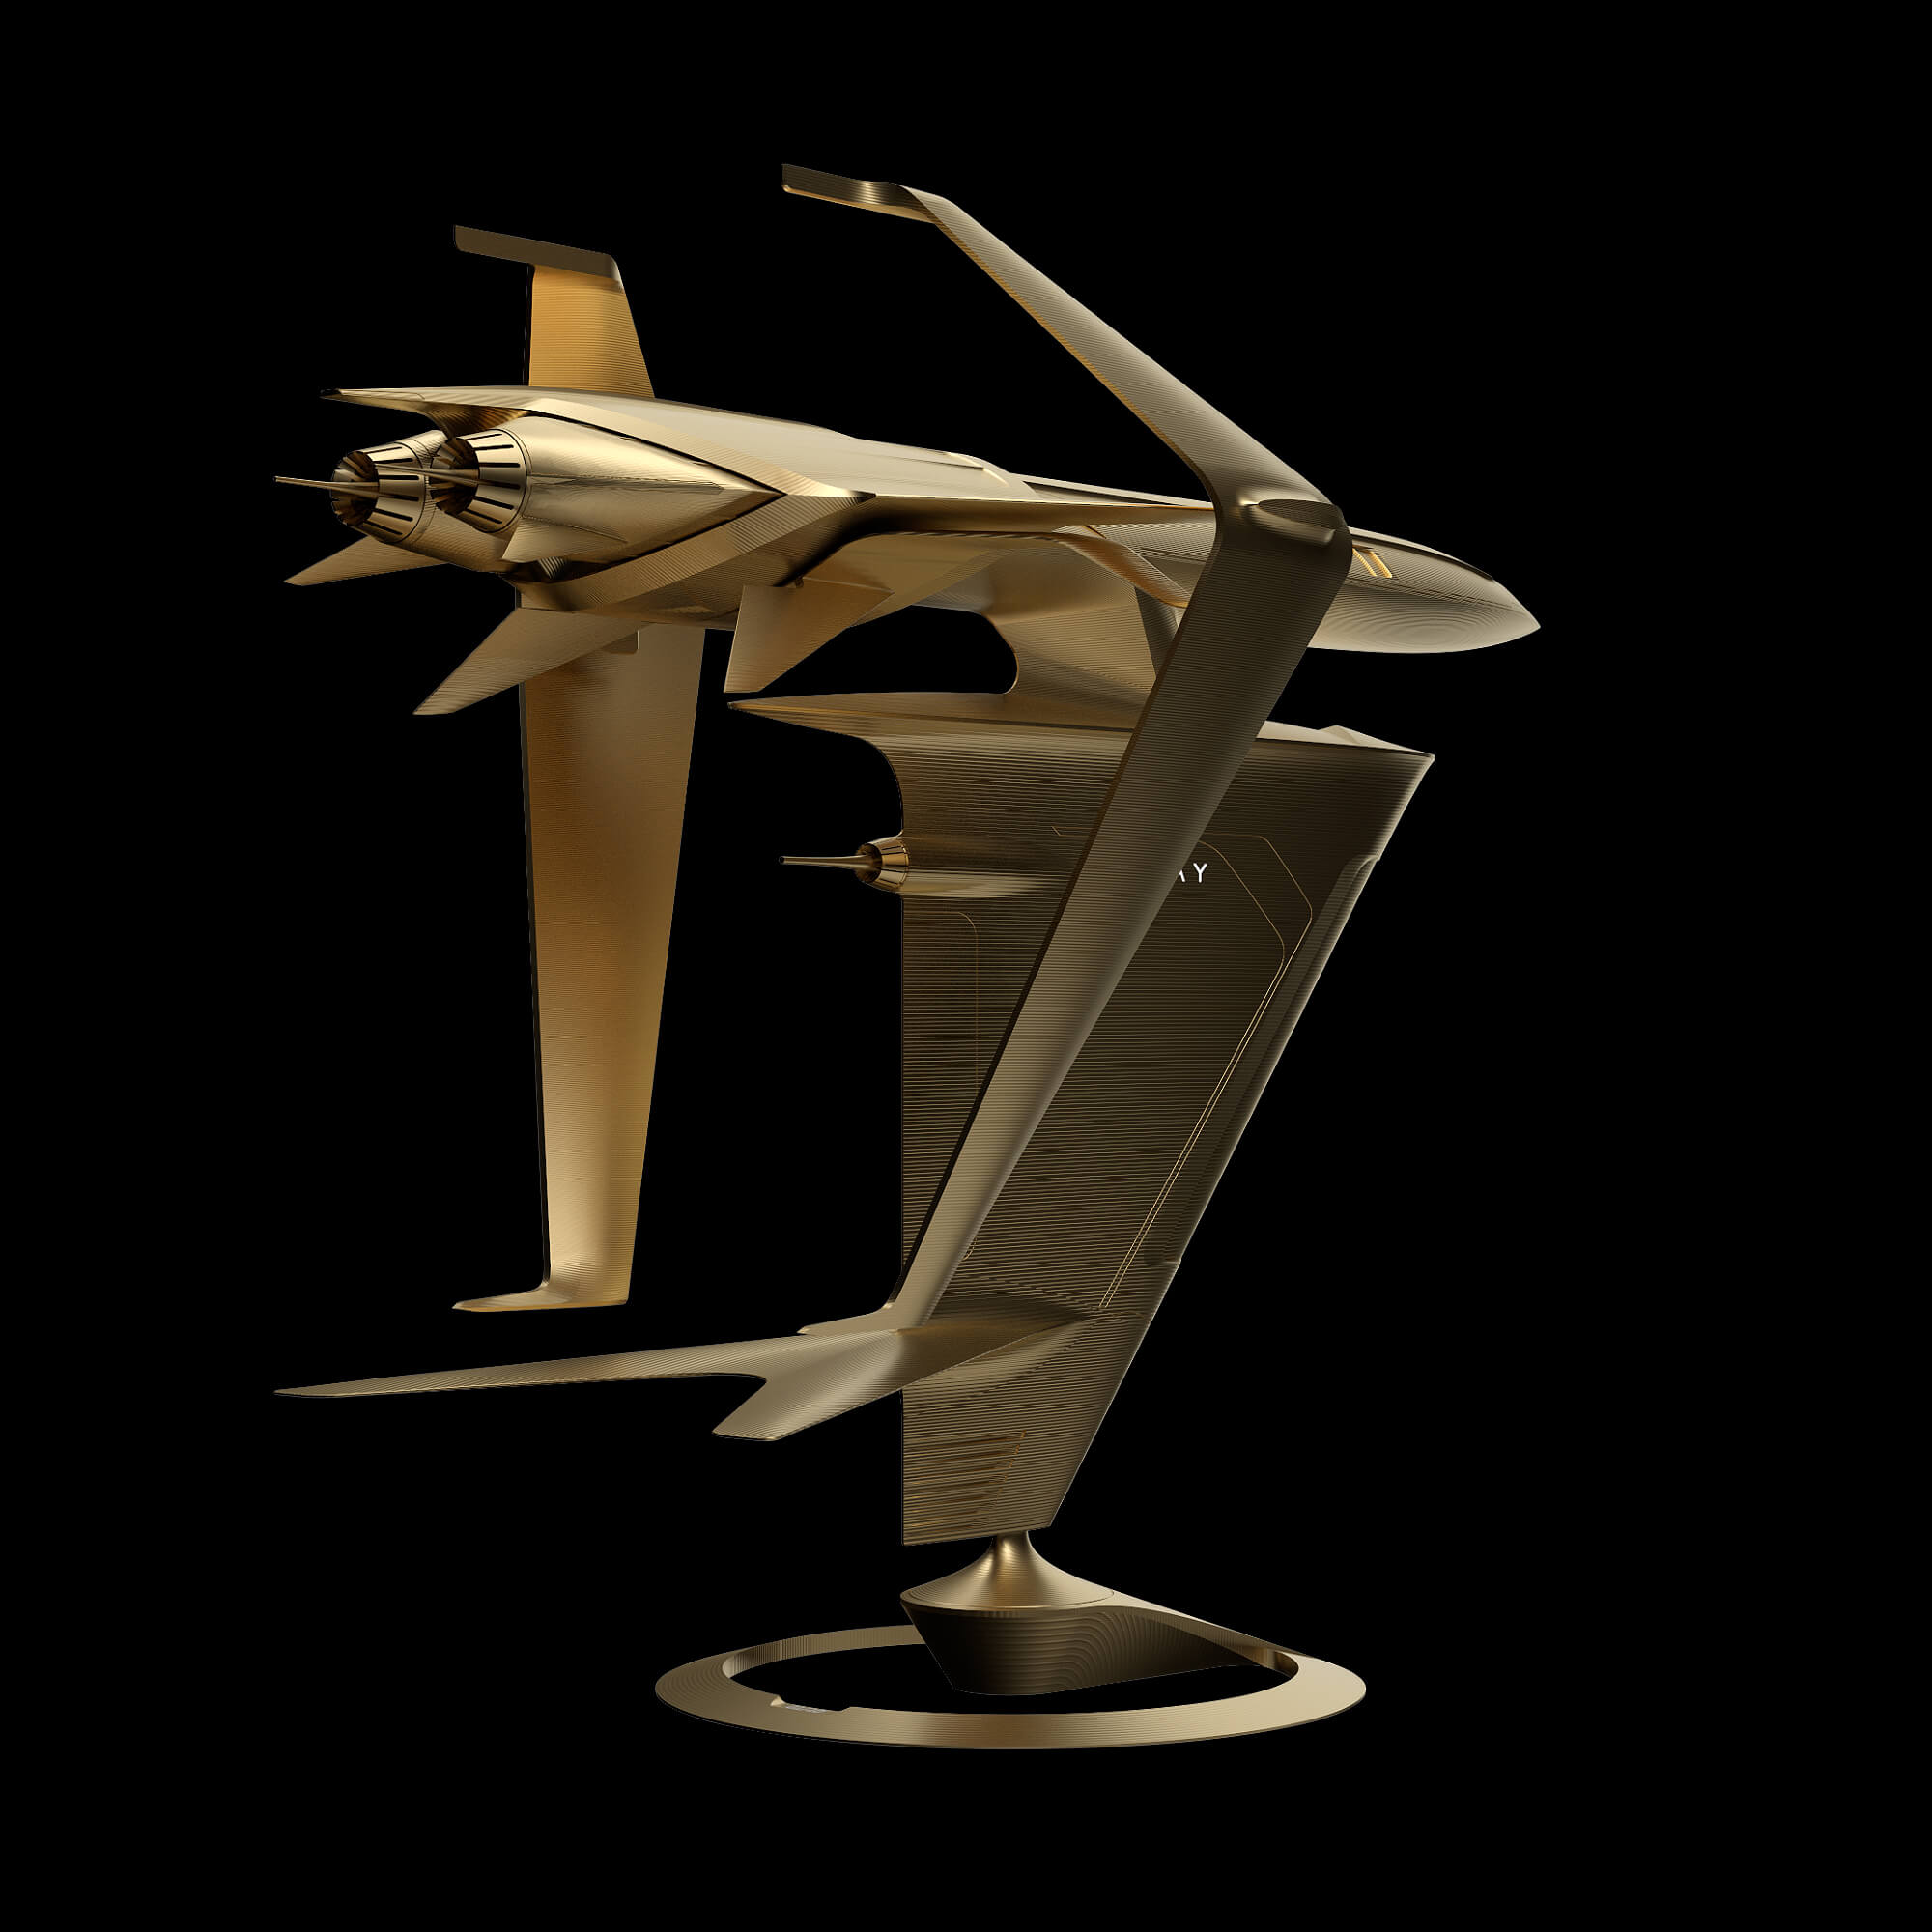 graycraft1-3 gold aluminium spaceship sculpture